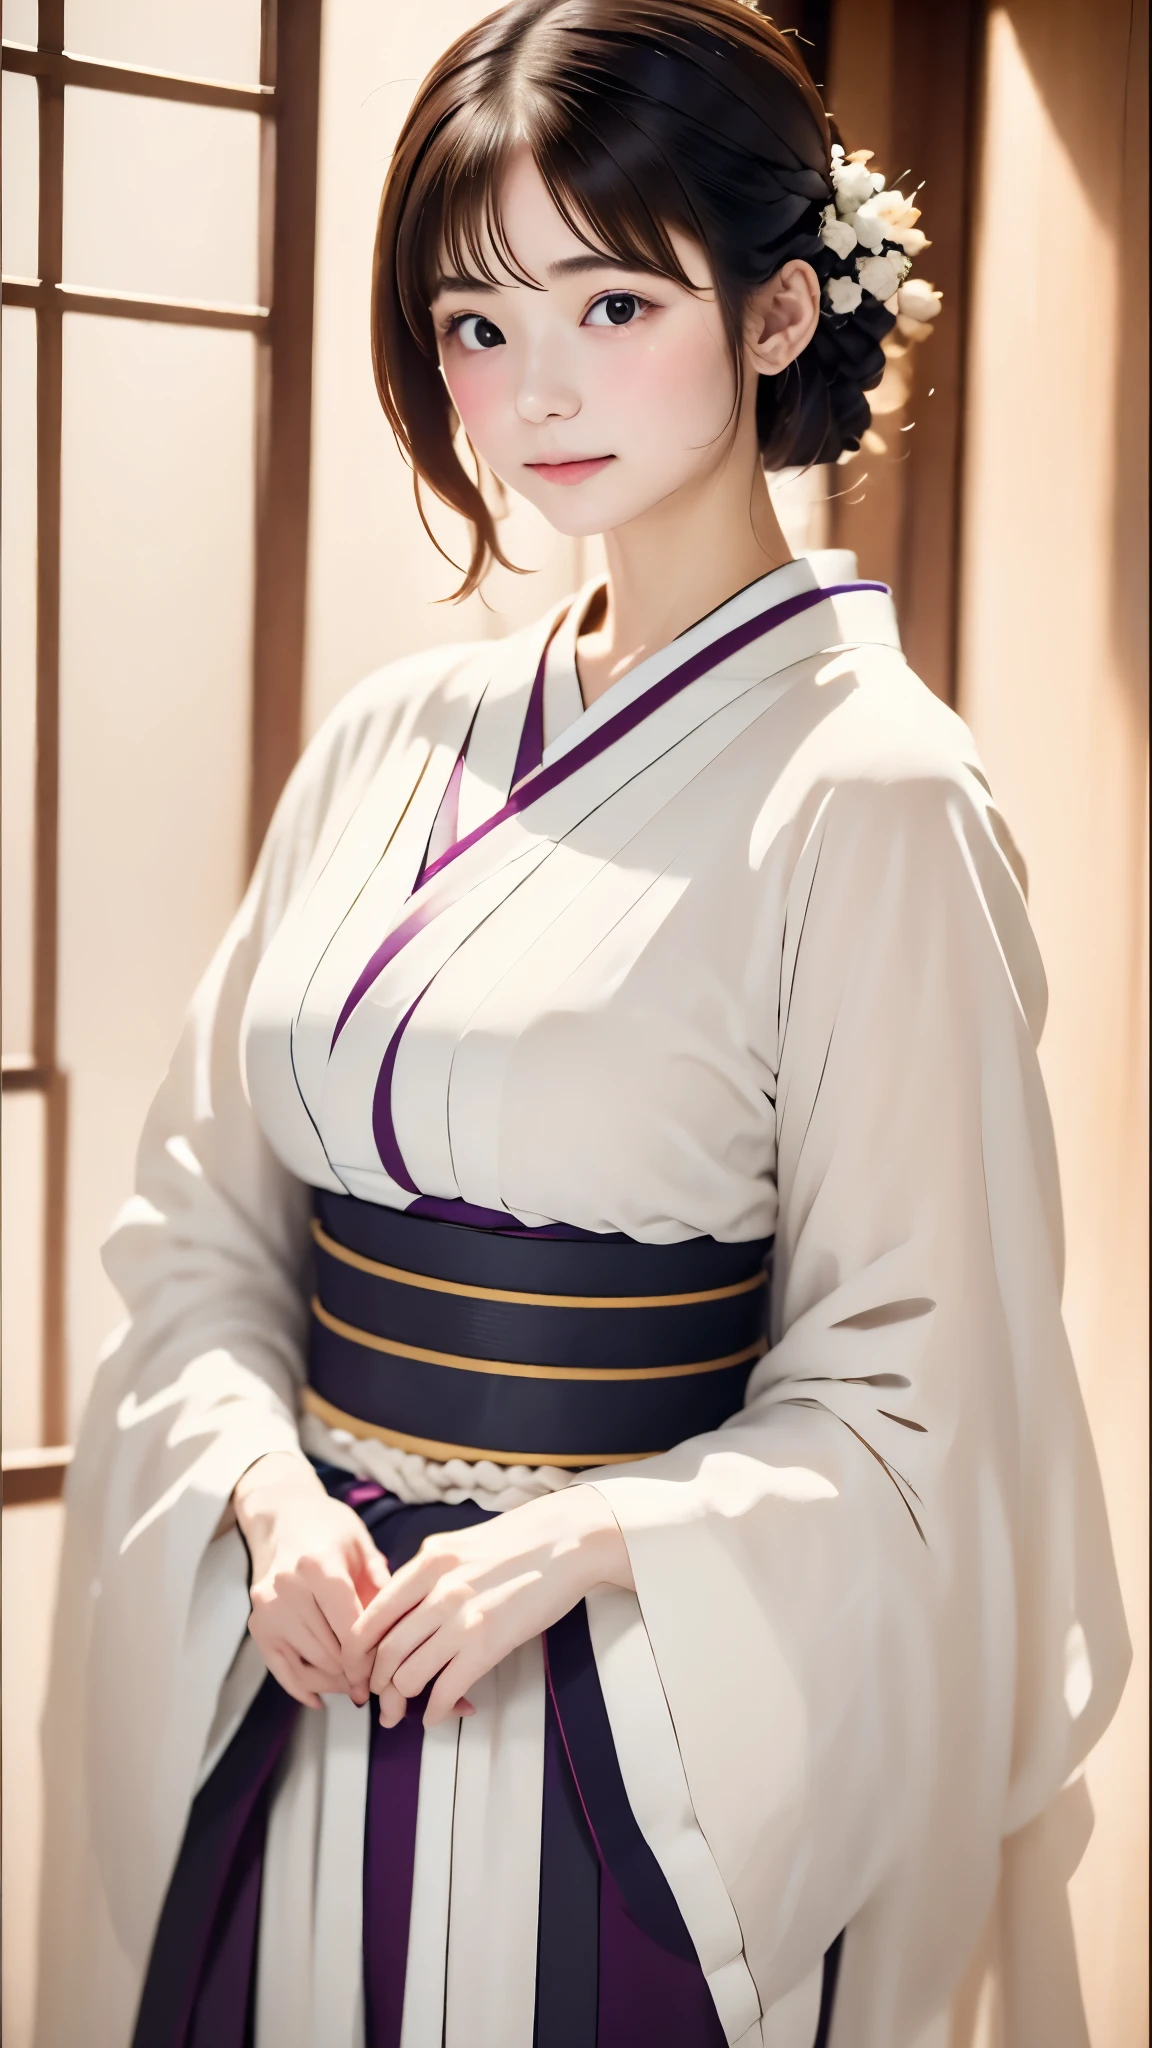 (((하얀 세상、흰 바탕)))、날것의、진짜 스틱、현실적인、엄청 귀여운 여자、완벽한 외모、자연스러운 모습、어떤 메이크업、통통한 입술아름다운 검은 머리、yamato nadeshiko、아름다운 연보라색 기모노、Nishijin-ori kimono、매우 섬세한 기모노 패턴、아름다운 각도、우아한 포즈、흰 바탕、배경 흰색、얼굴에 집중하다、상체 각도、최상의 품질、높은 해상도、마스터피스:1.오르트레이트、８ｋ、50ｍｍ렌즈、완벽한 조명、전문 사진가